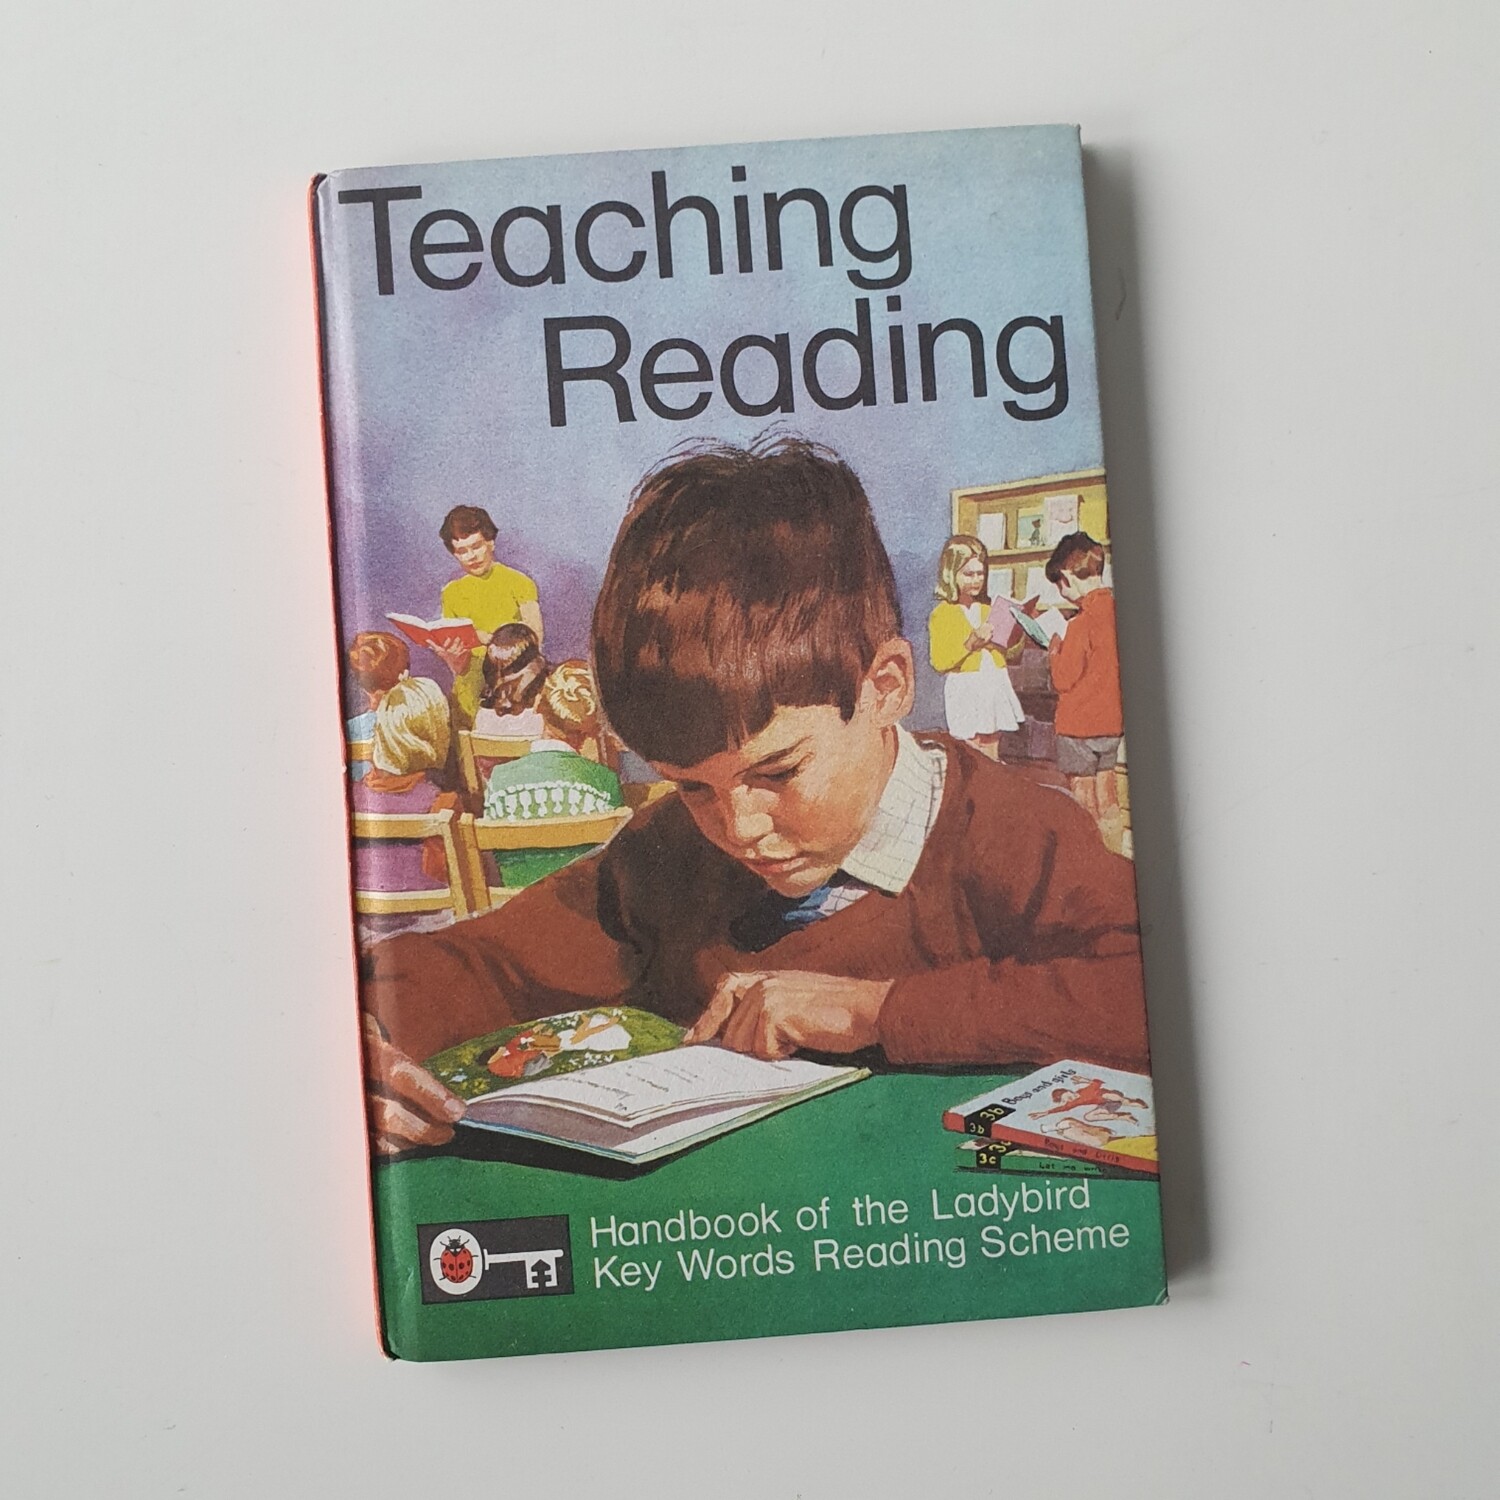 Teaching Reading Notebook - Ladybird book